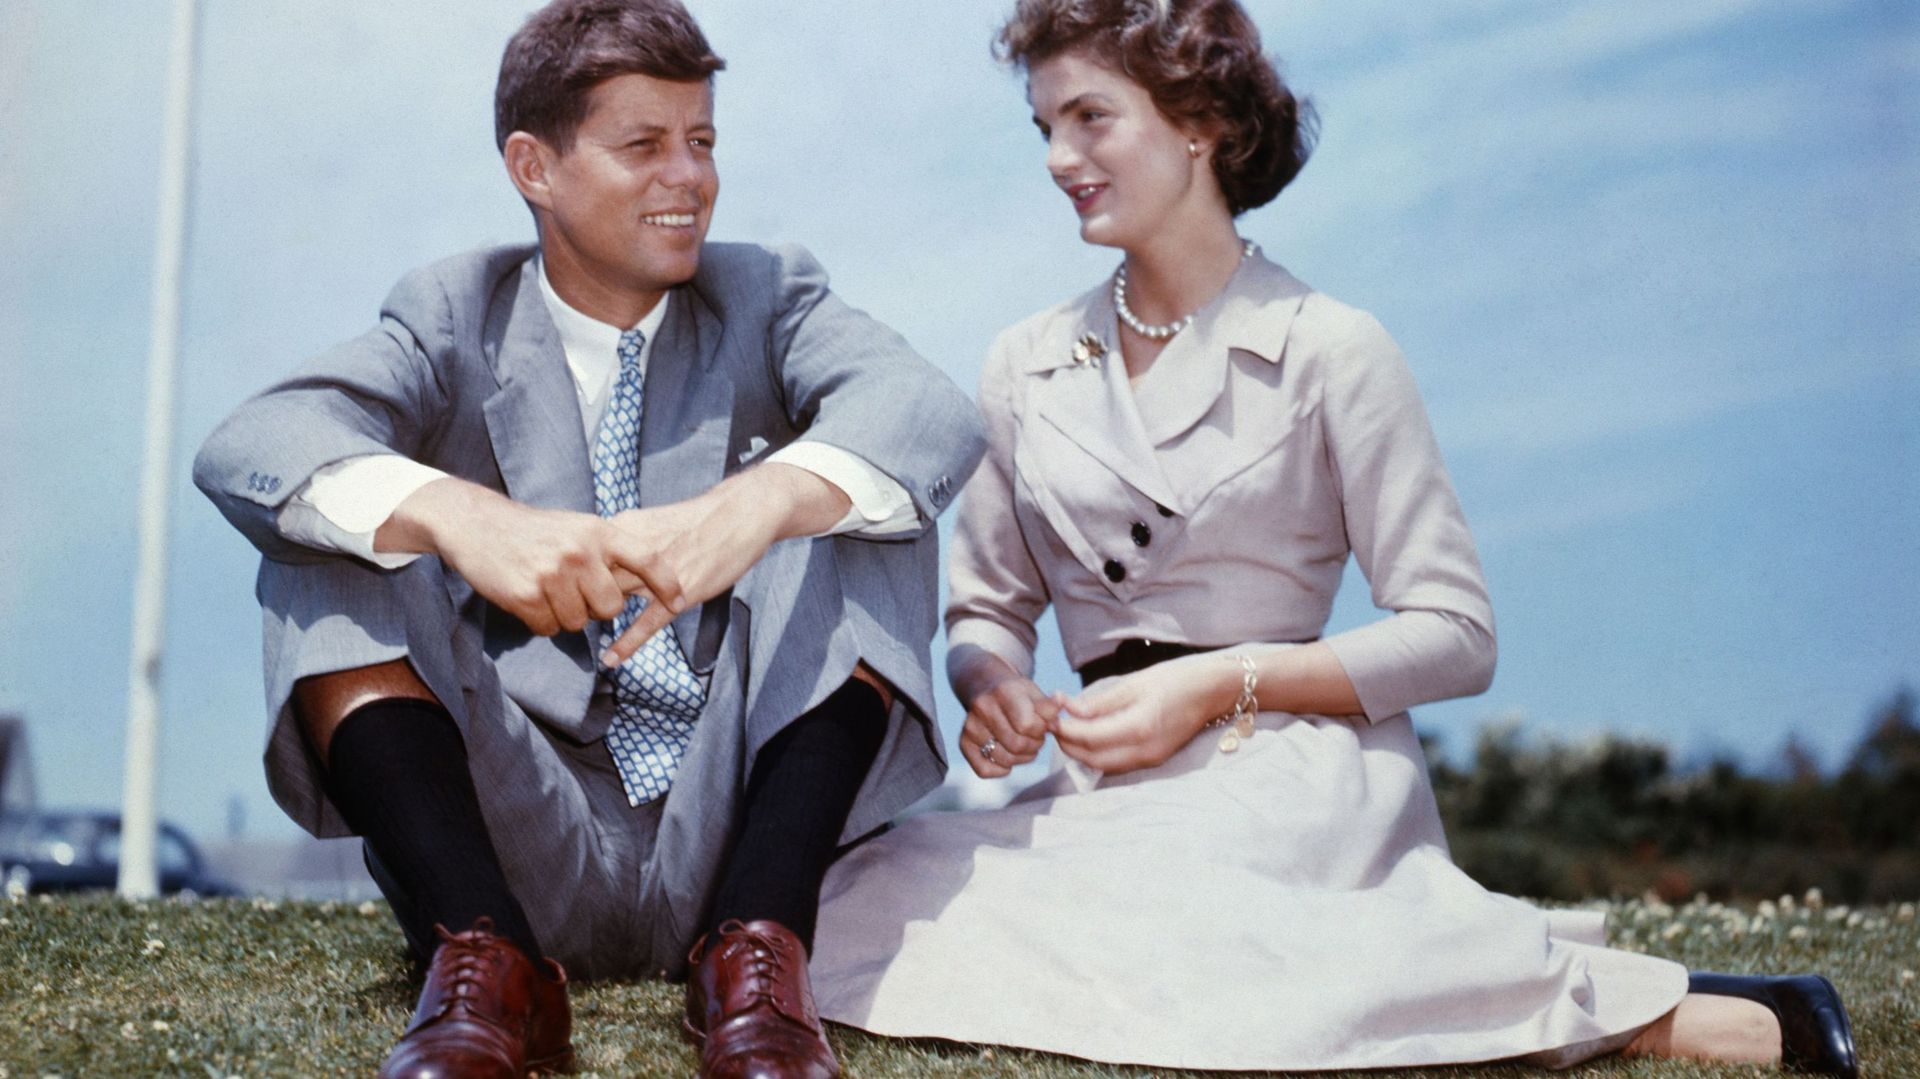 La famiglia Kennedy, due fratelli americani: che fine hanno fatto i figli di John e Jacqueline Kennedy?